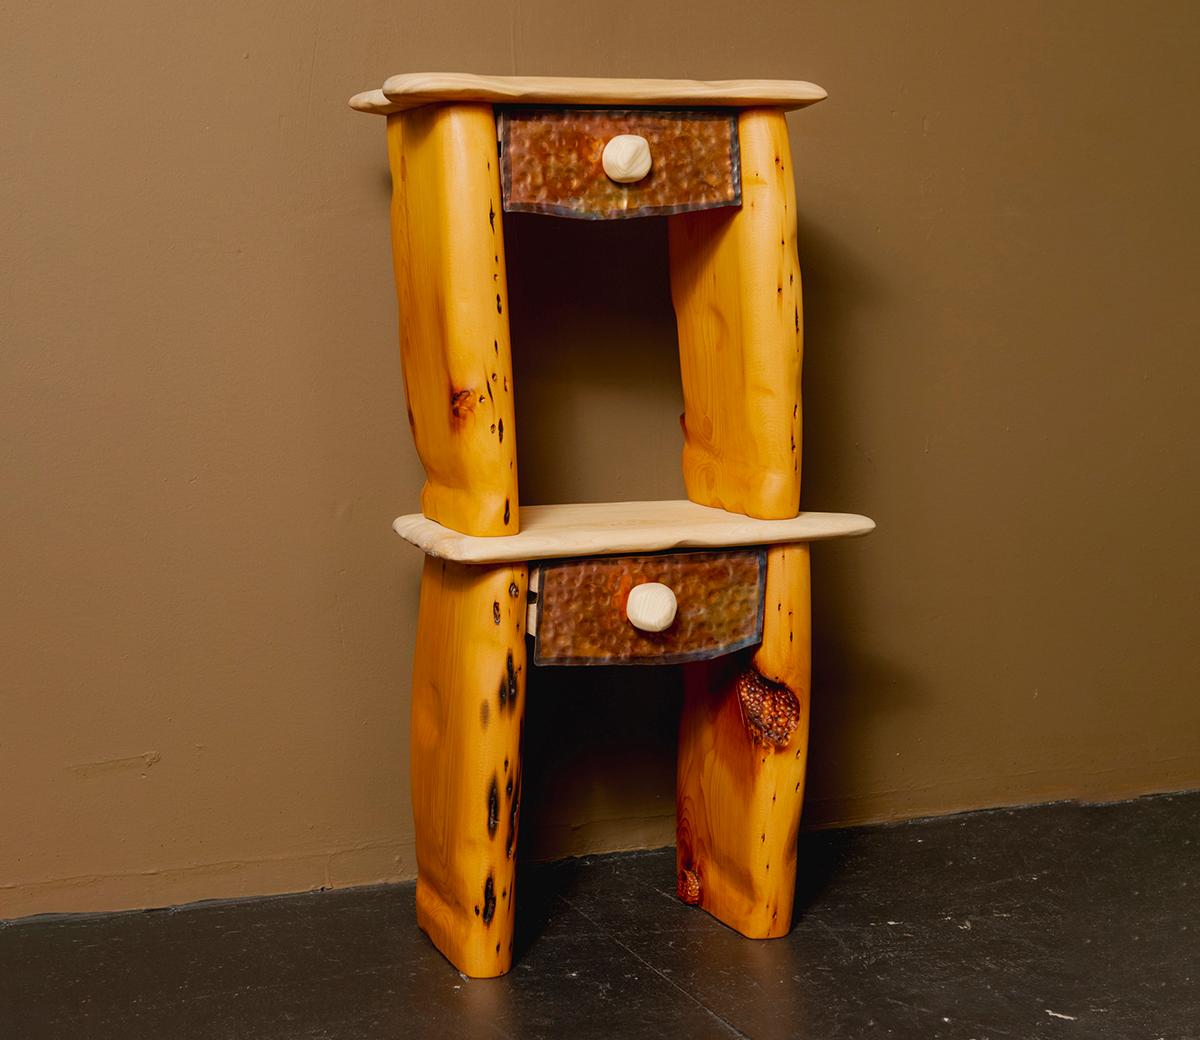 Der Nachttisch Pocket steckt voller kleiner Eigenheiten: Seine Beine aus recyceltem Holz sind leicht schräg gestellt, so dass sie zum Bett hin oder vom Bett weg aufgestellt werden können. In die massive Eschenholzplatte ist an der Seite ein kleiner